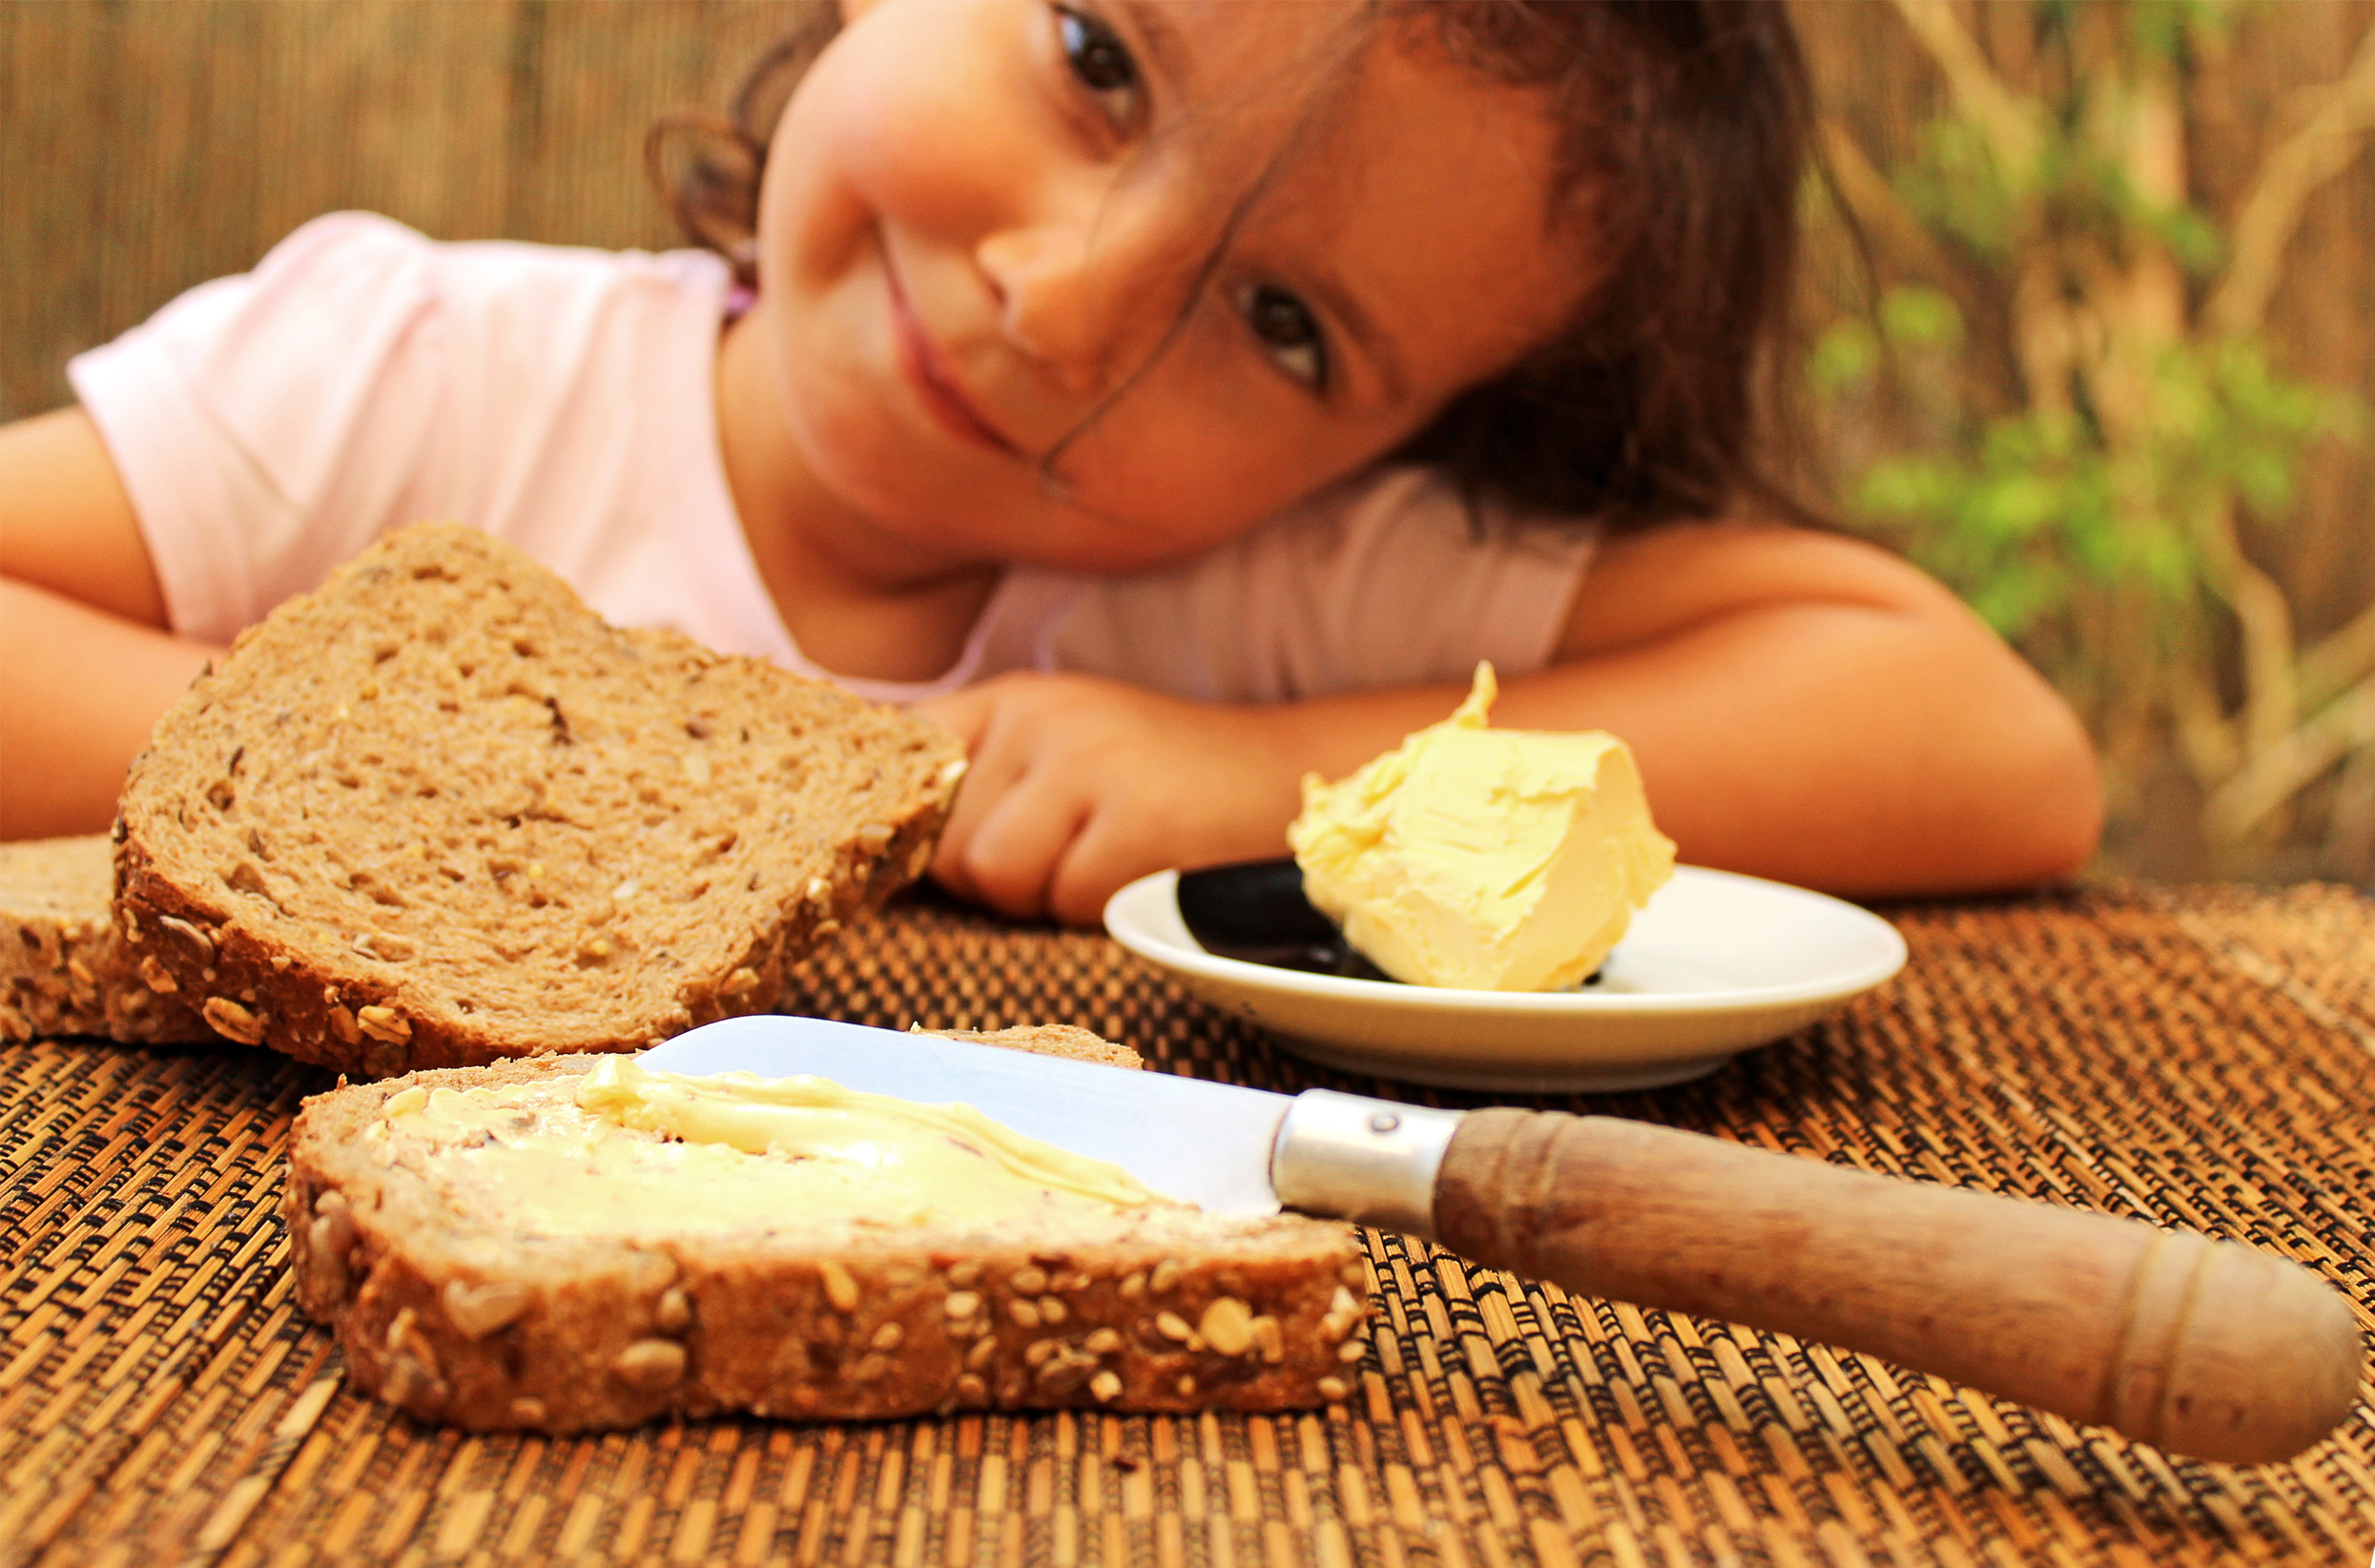 Употребление детьми готовых домашних блюд предоставленных родителями. Человек ест хлеб. Хлеб для детей. Хлеб с маслом. Девочка с хлебом.